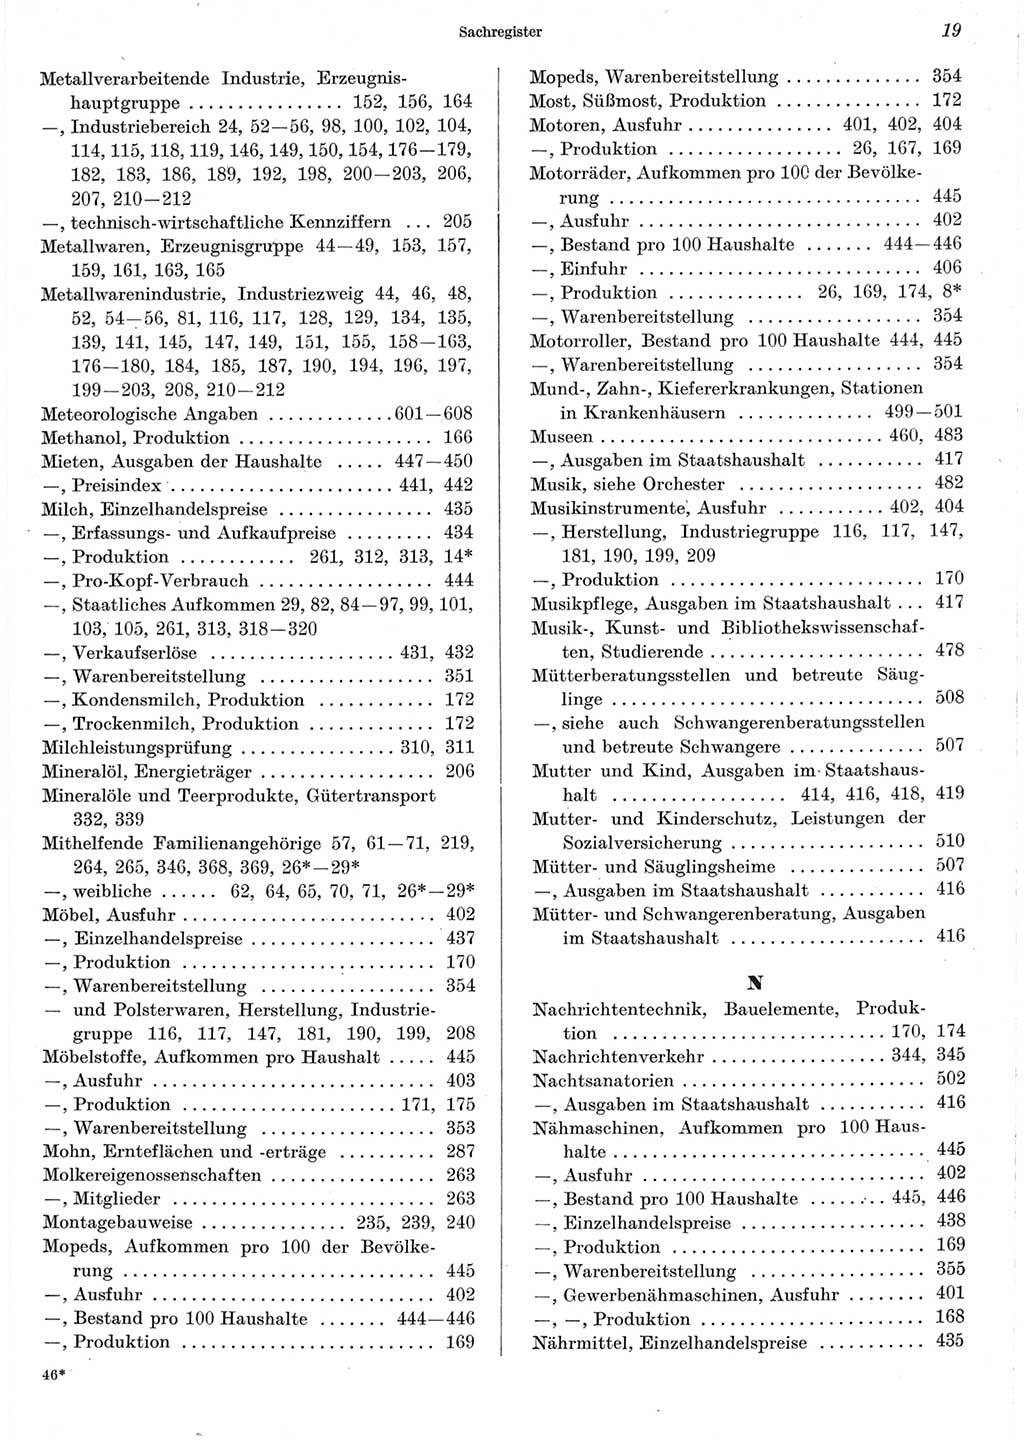 Statistisches Jahrbuch der Deutschen Demokratischen Republik (DDR) 1967, Seite 19 (Stat. Jb. DDR 1967, S. 19)